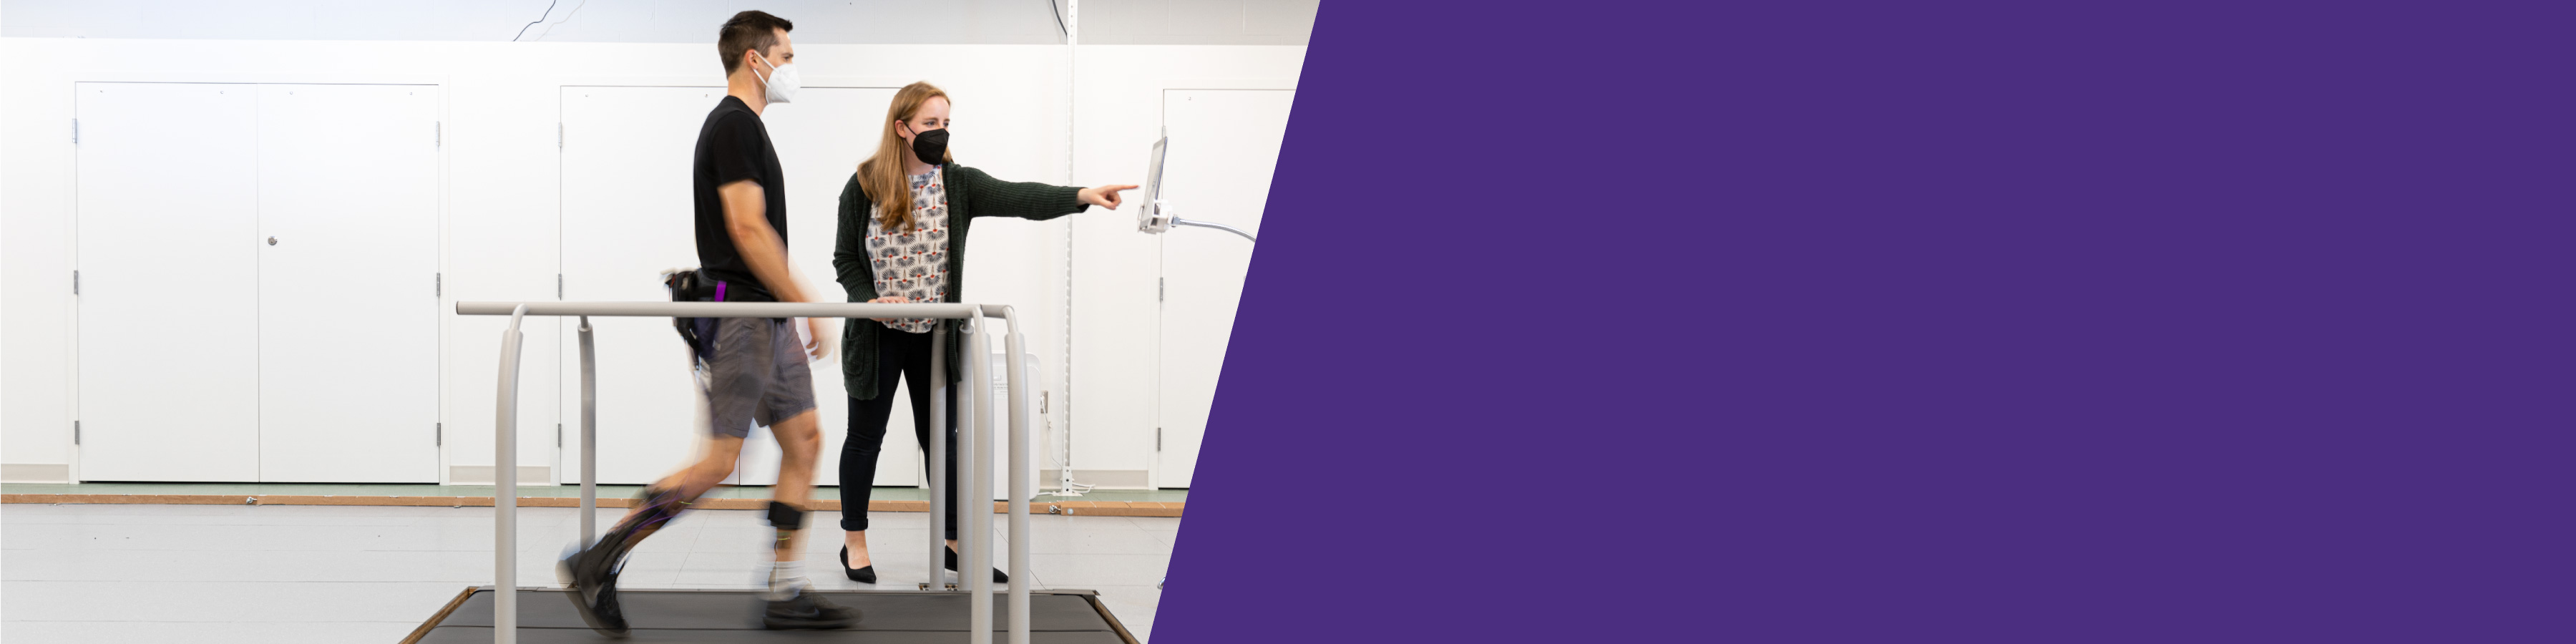 Man walking on a treadmill wearing an exoskeleton device